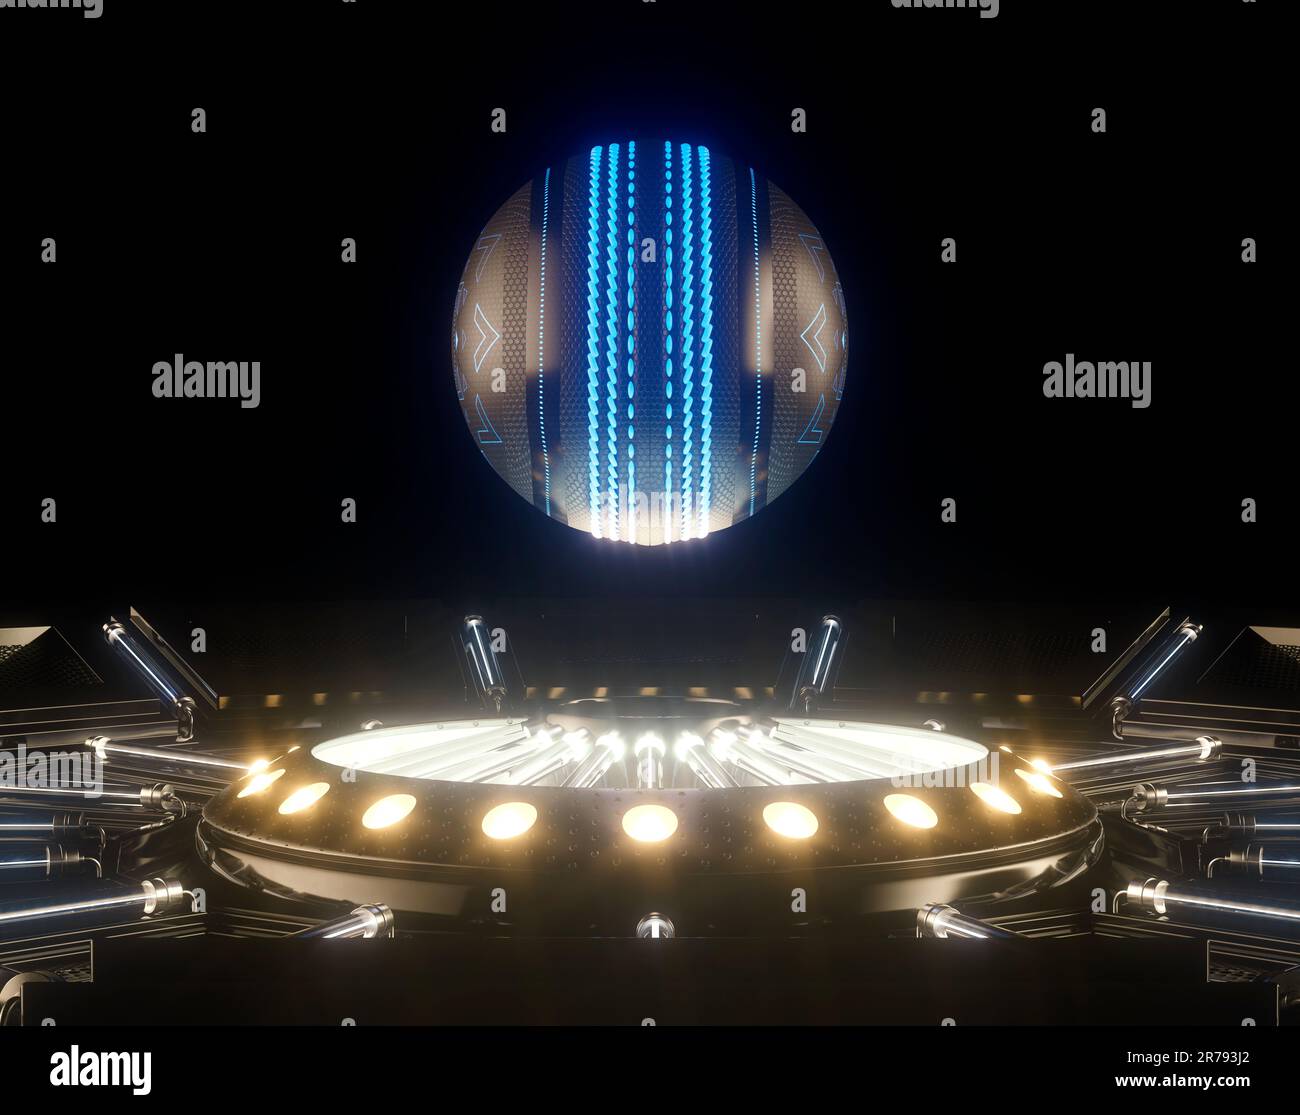 Un concetto sportivo futuristico di una palla da cricket illuminata con marcature al neon che galleggiano sopra un palcoscenico futuristico al neon - render 3D Foto Stock